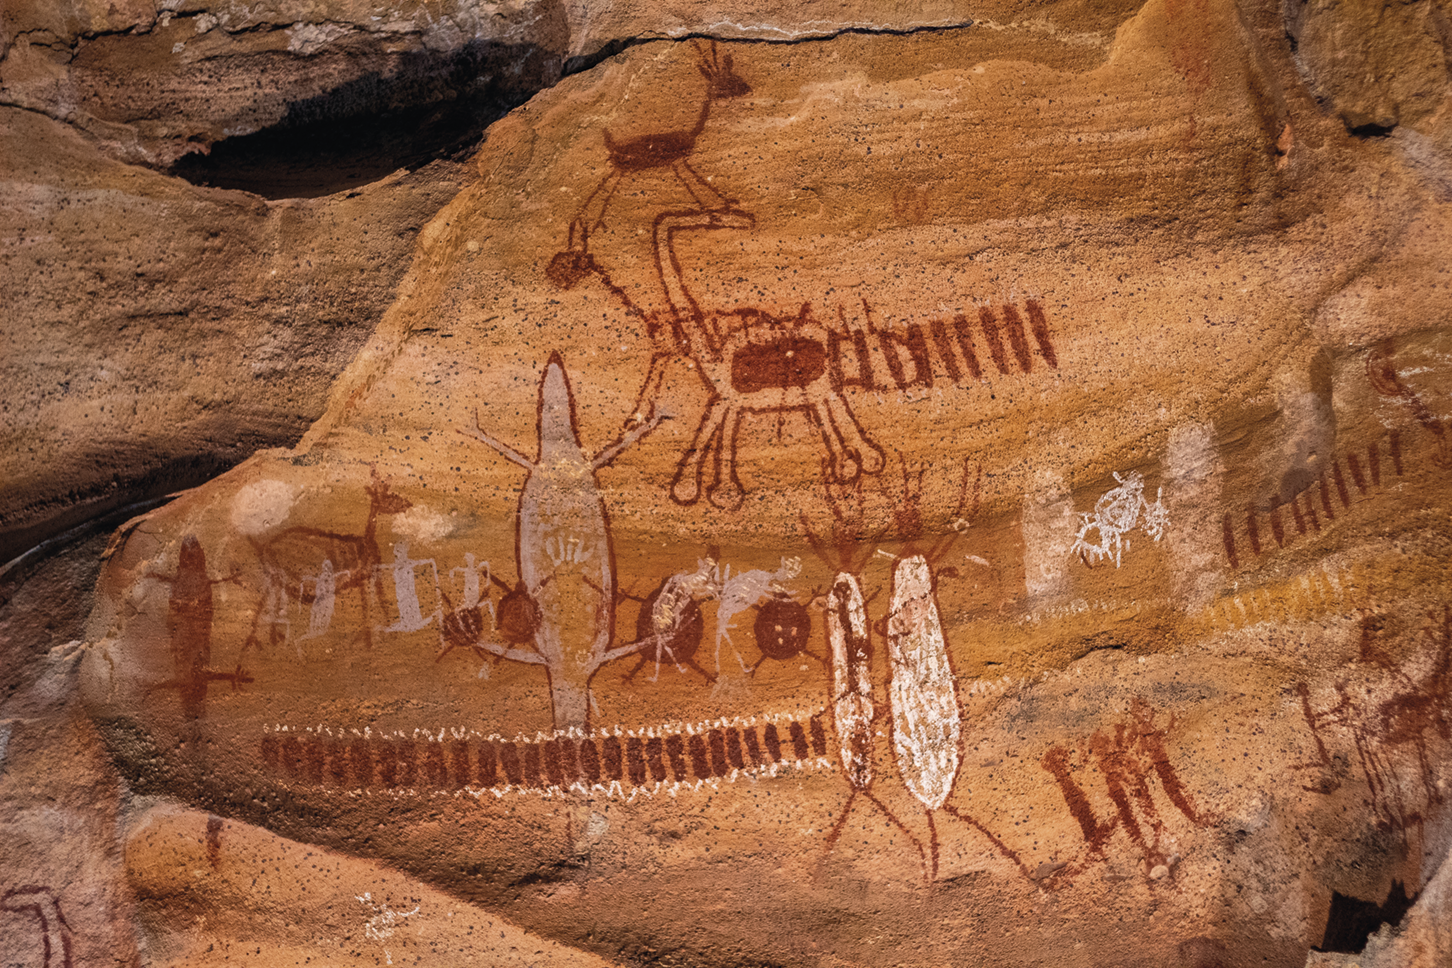 Fotografia. Pinturas rupestres em uma rocha irregular. Há figuras de animais quadrúpedes e traços verticais paralelos.